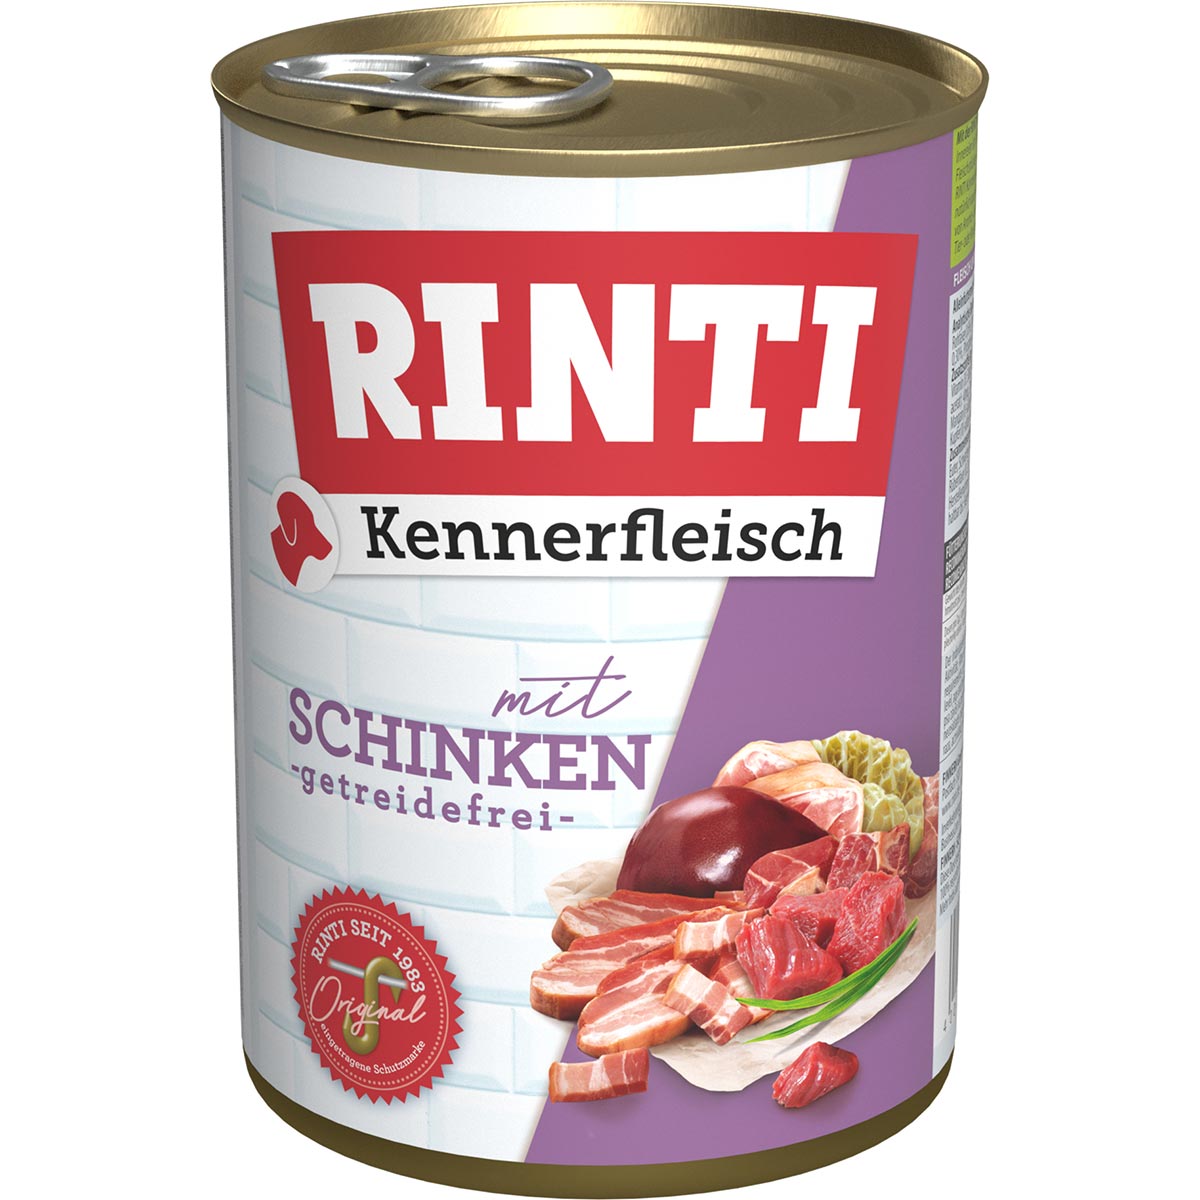 Rinti Kennerfleisch mit Schinken 24x400g